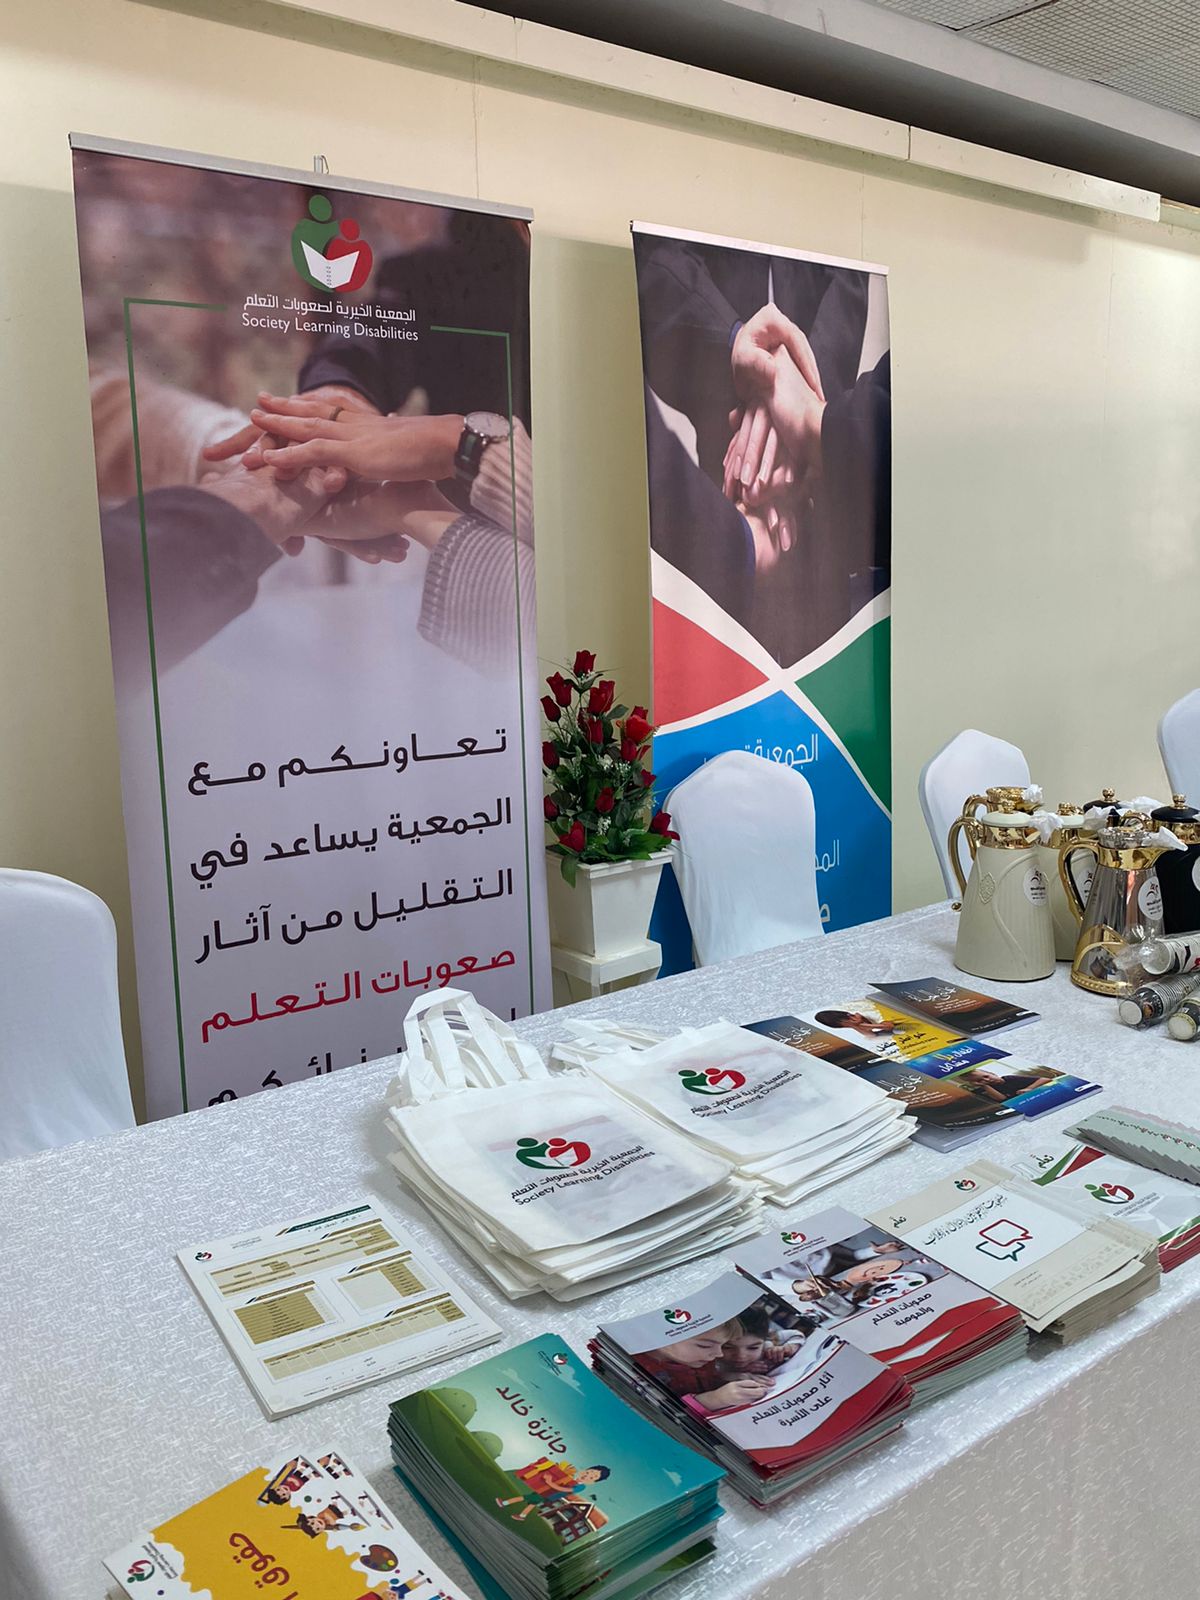 “خيرية صعوبات التعلم” تشارك مع صحة منطقة الرياض فى اليوم العالمي للإعاقة